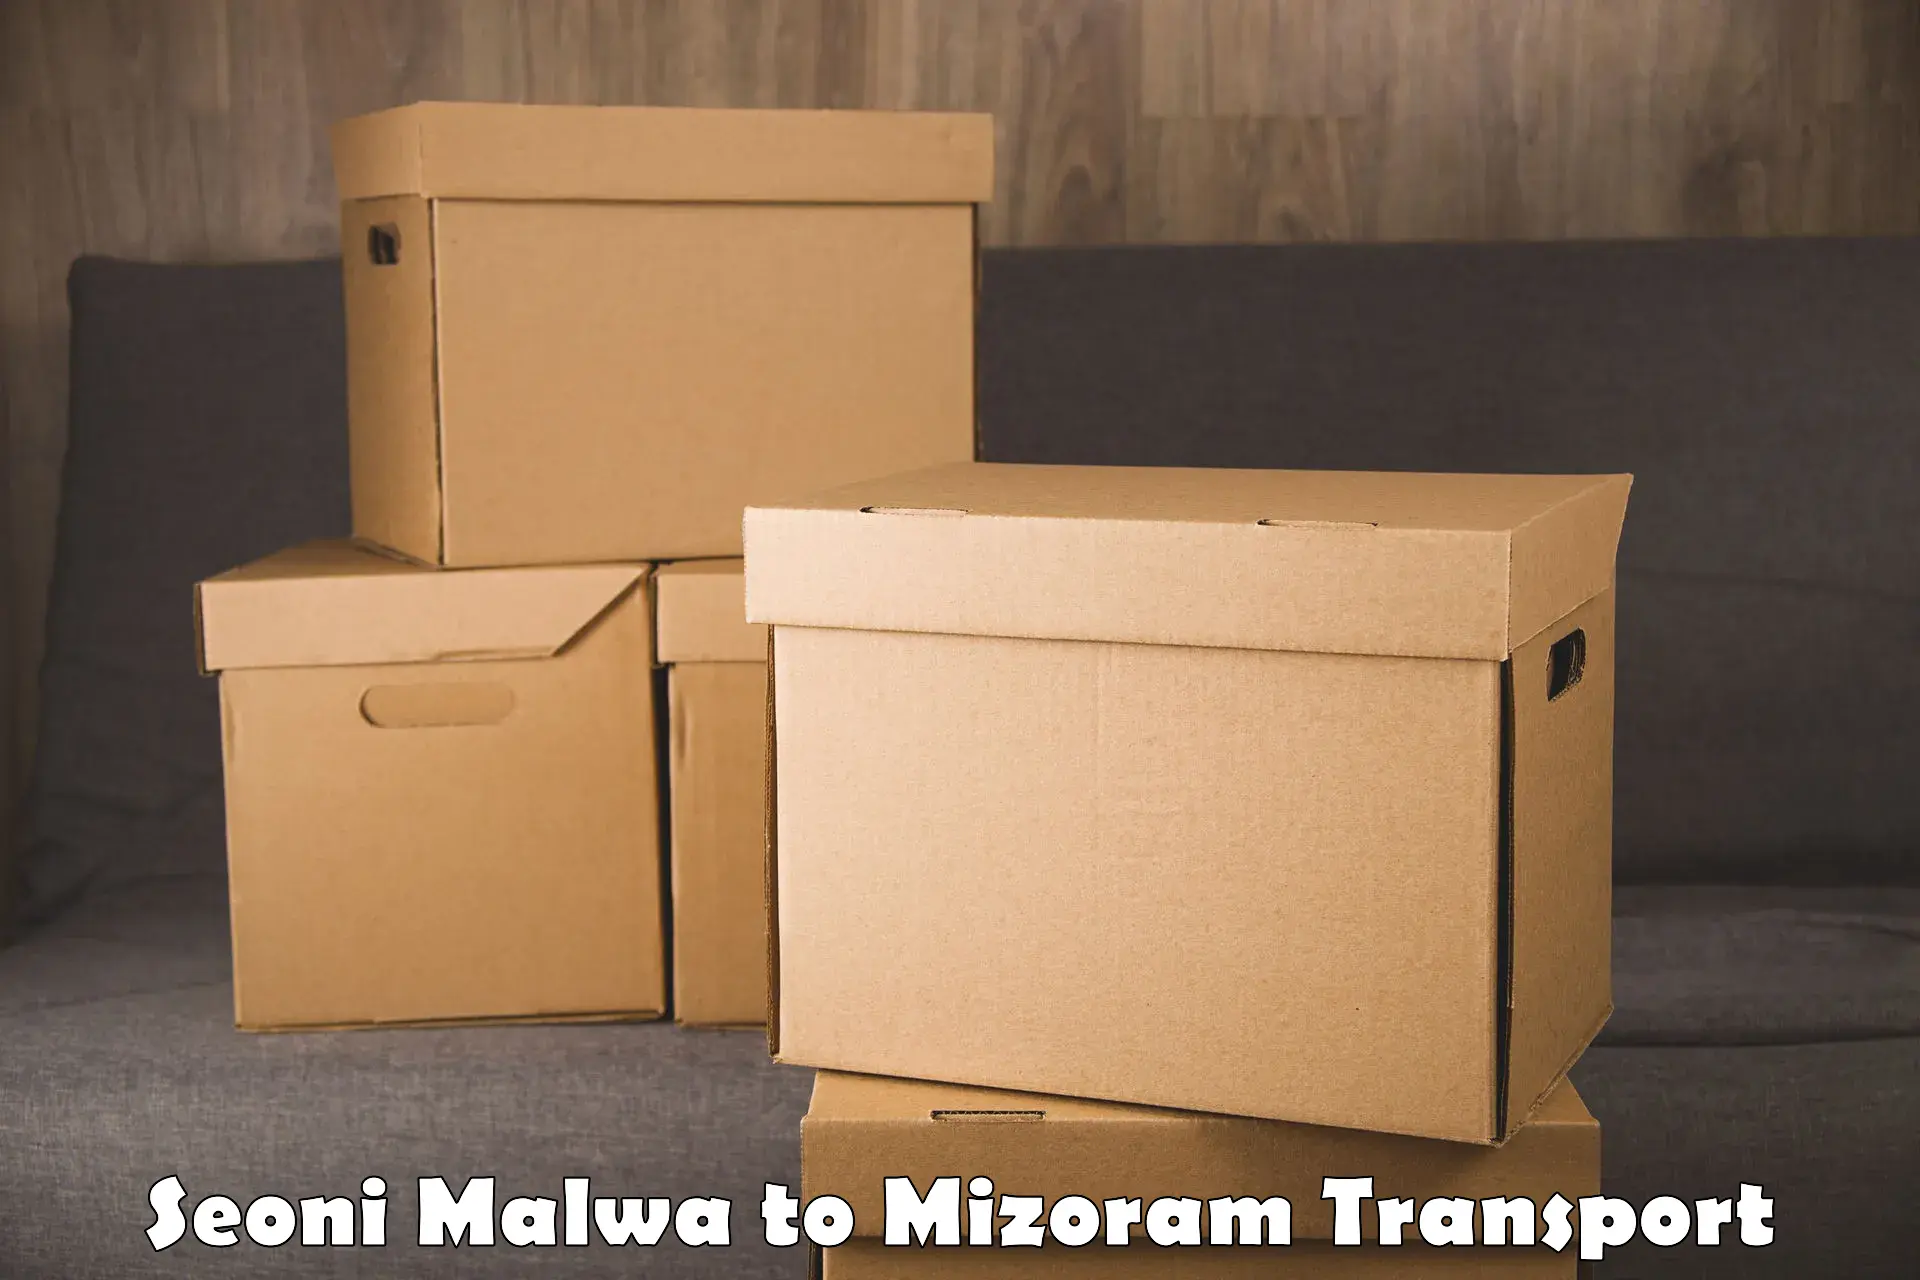 Furniture transport service Seoni Malwa to Darlawn